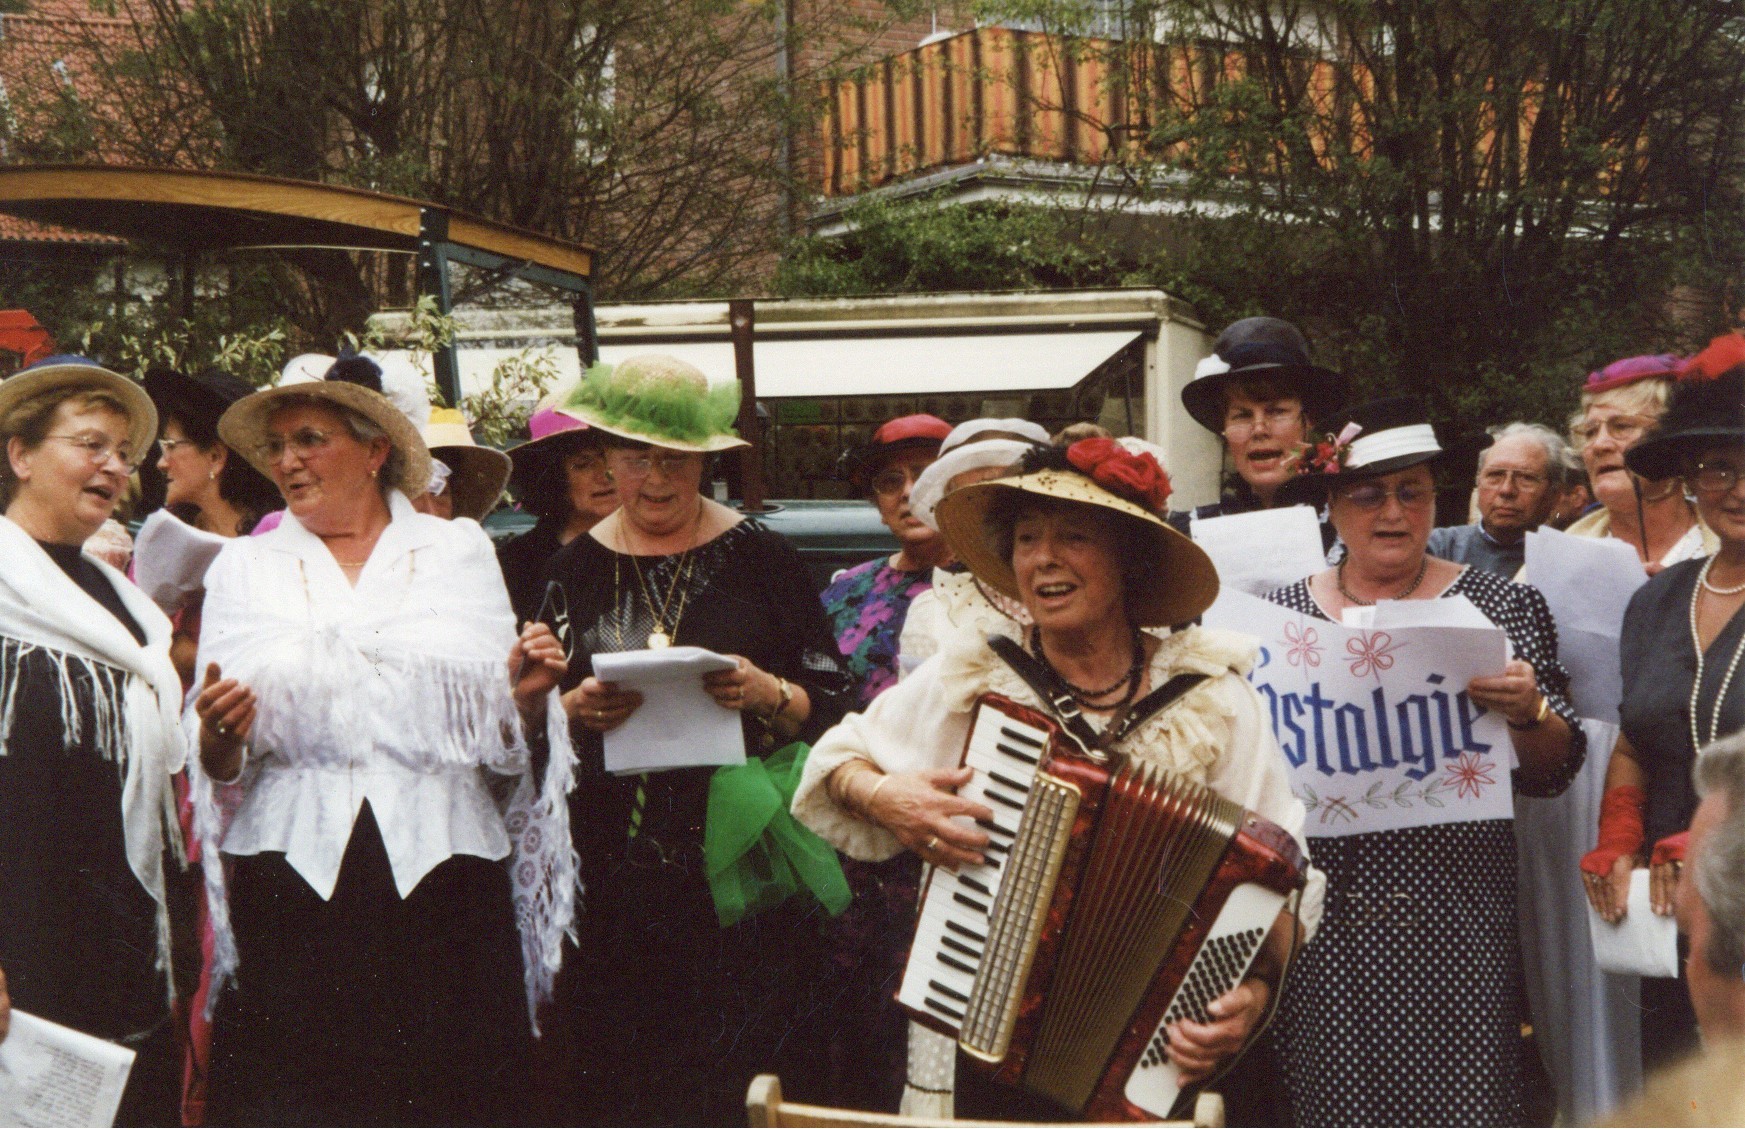 Dorfbrunnenfest in Oetinghausen 2001